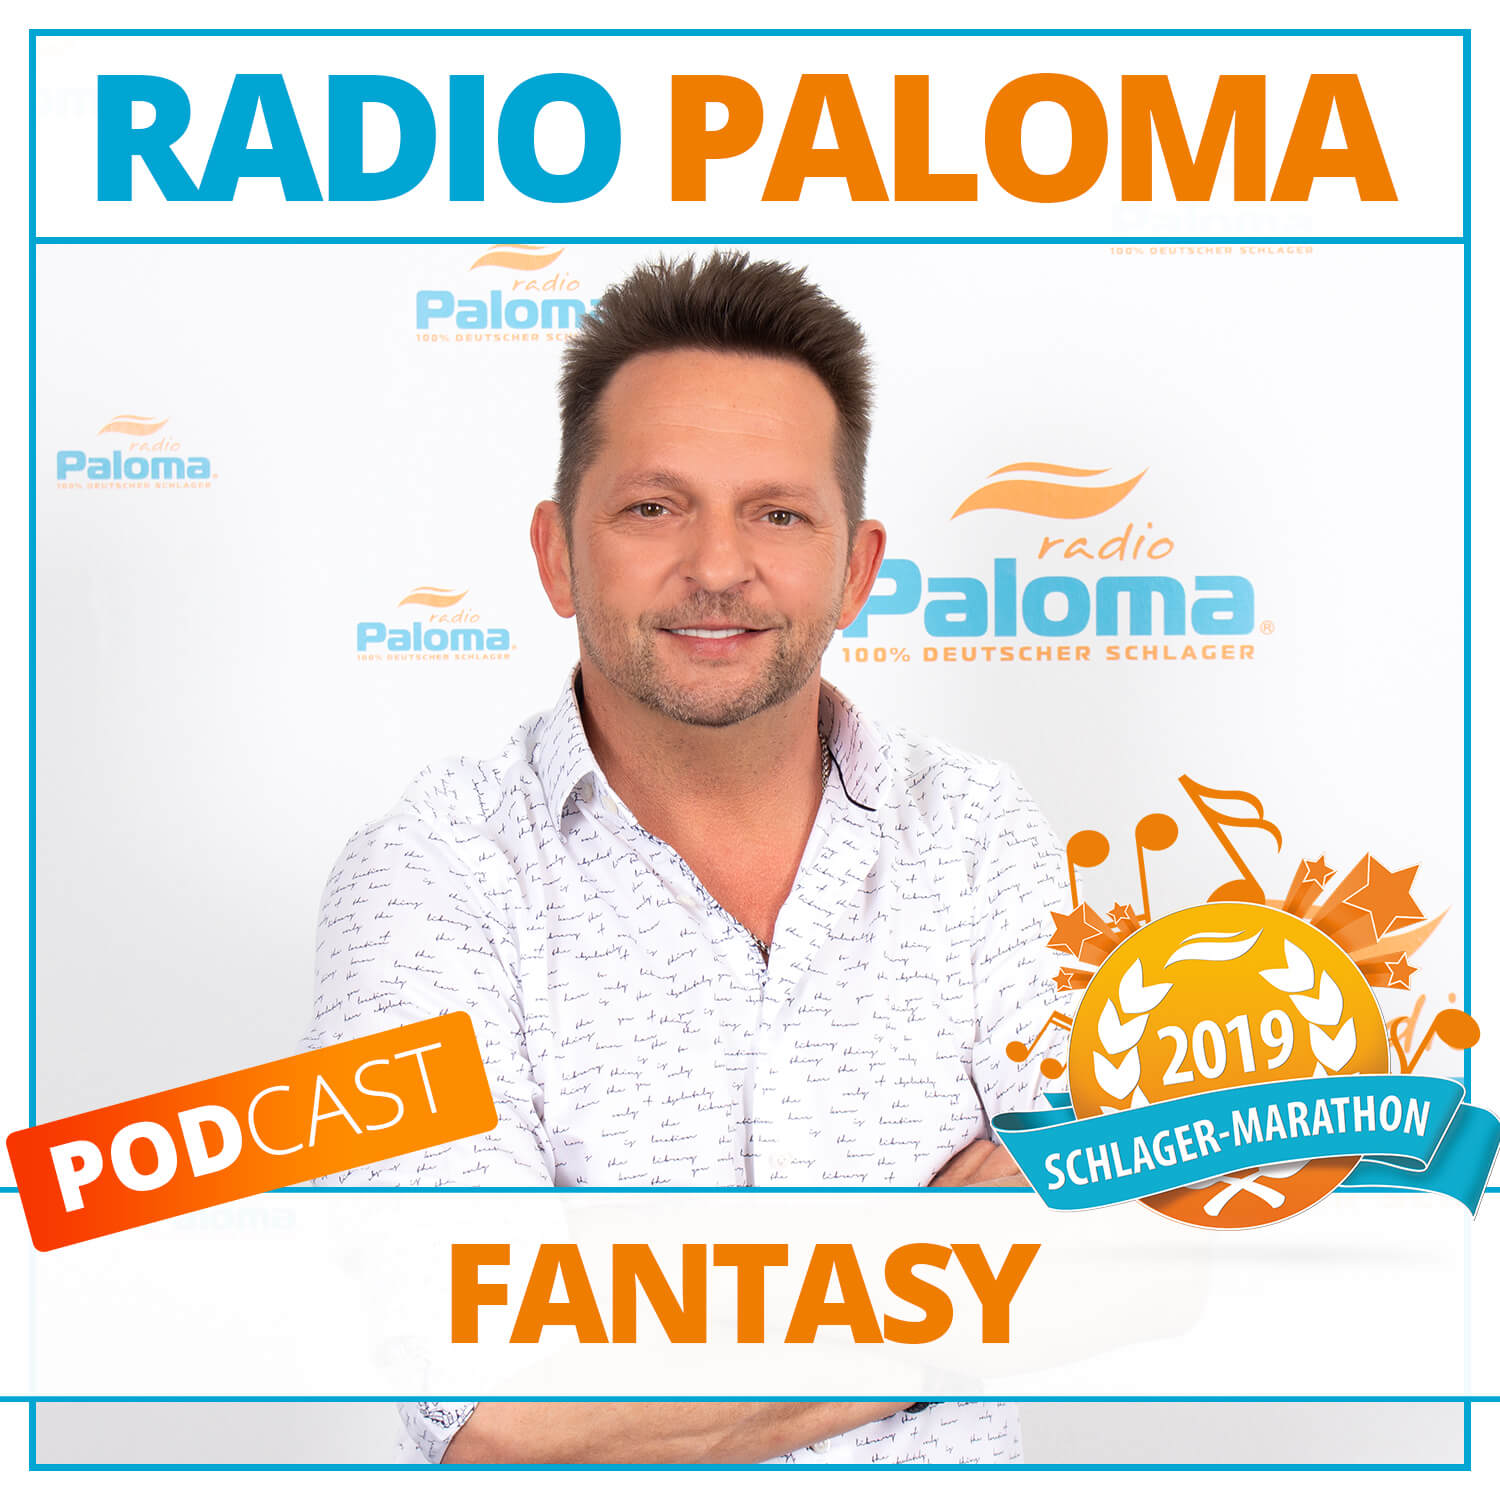 Der Radio Paloma Schlager-Marathon 2019 mit Fantasy